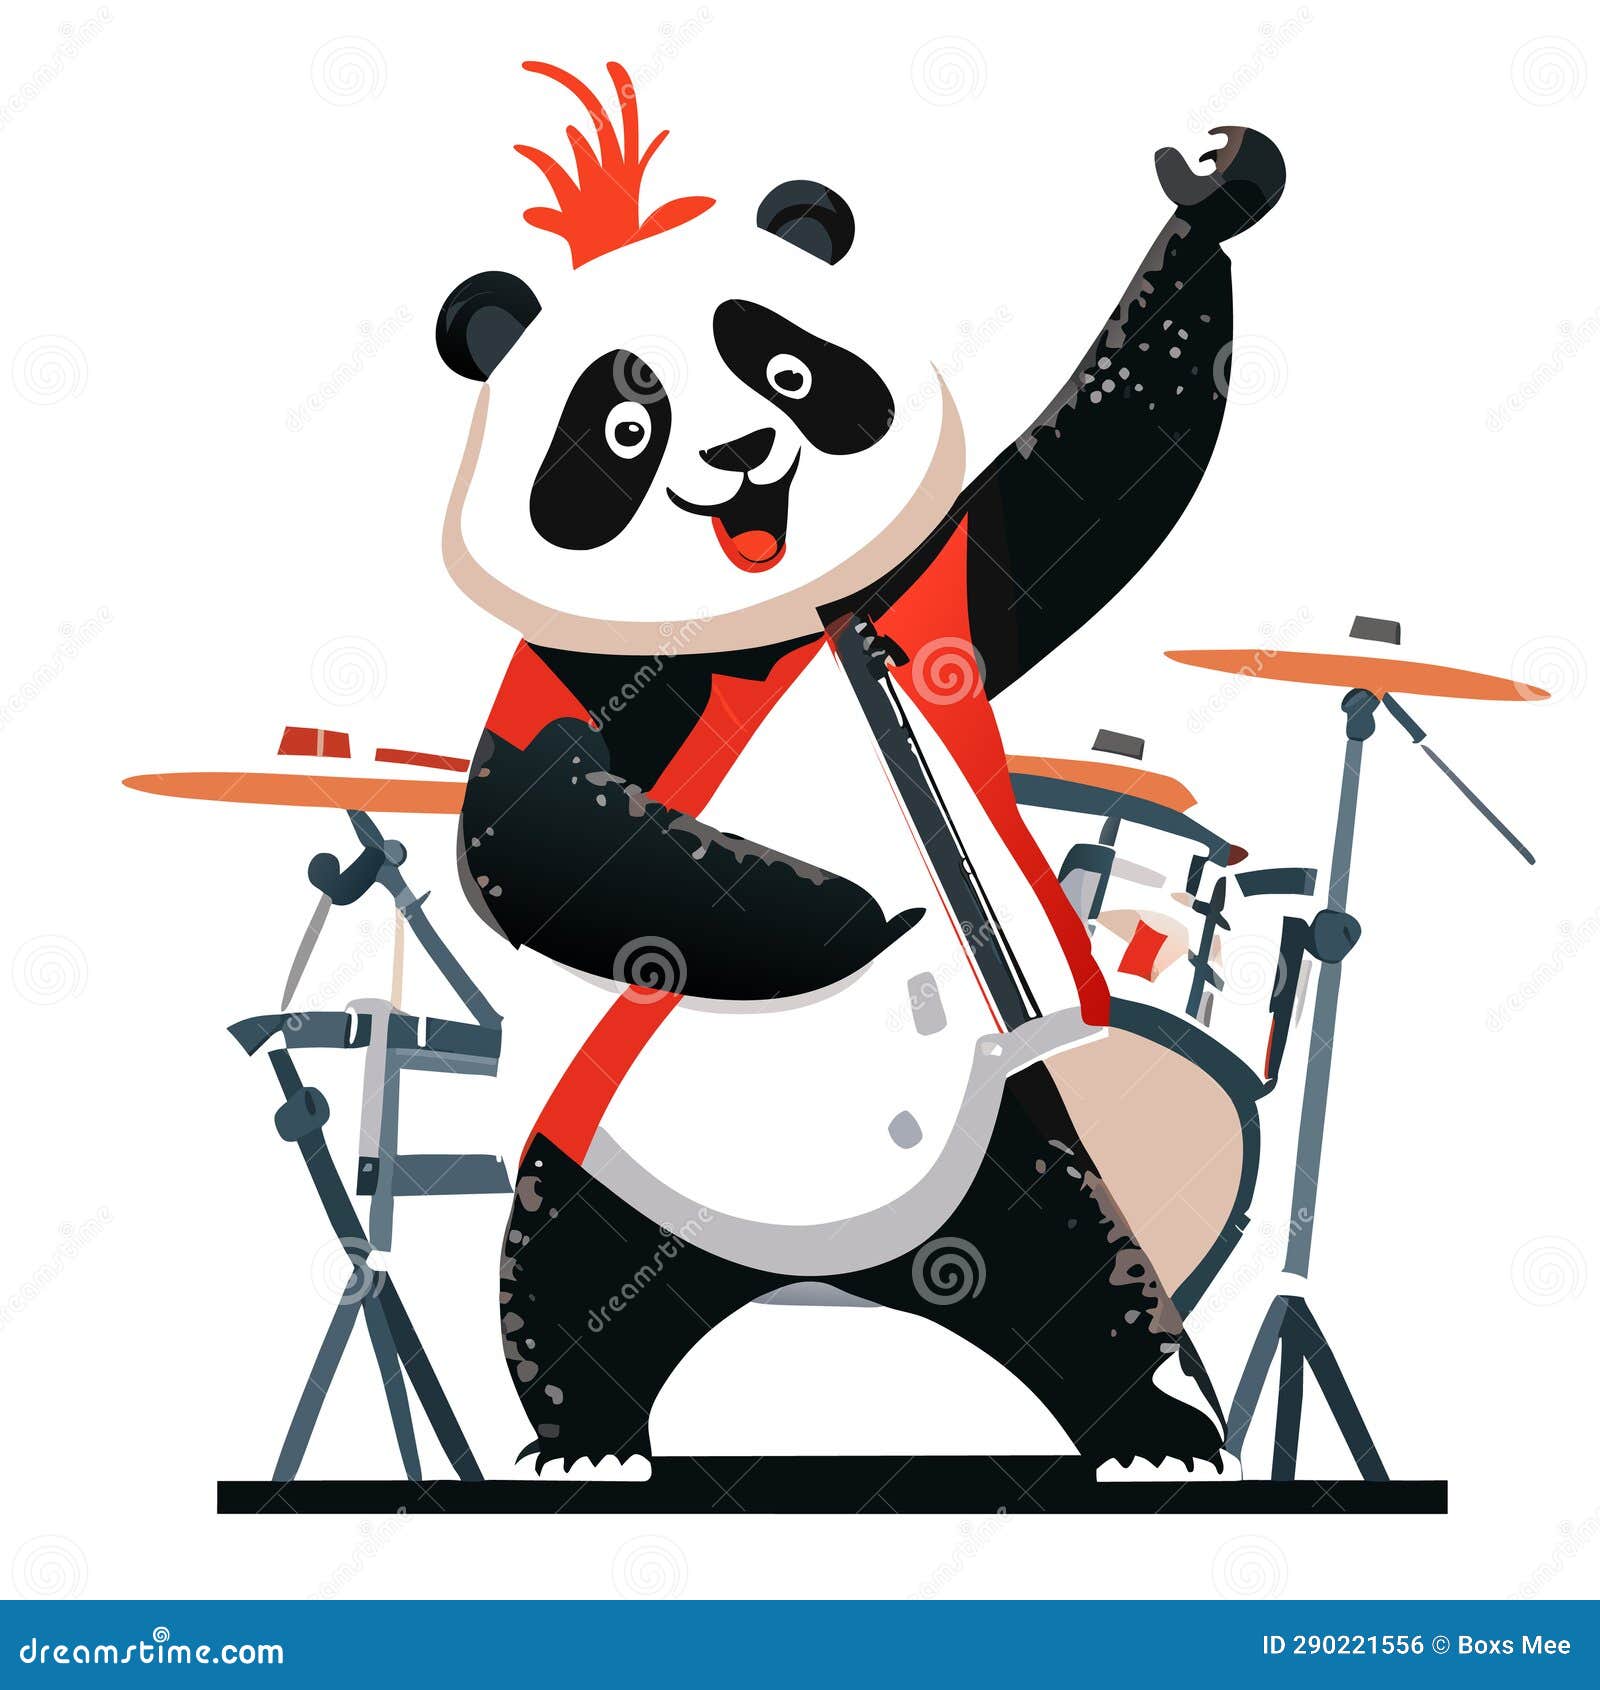 Panda-drum Royalty Free Vector Image - VectorStock